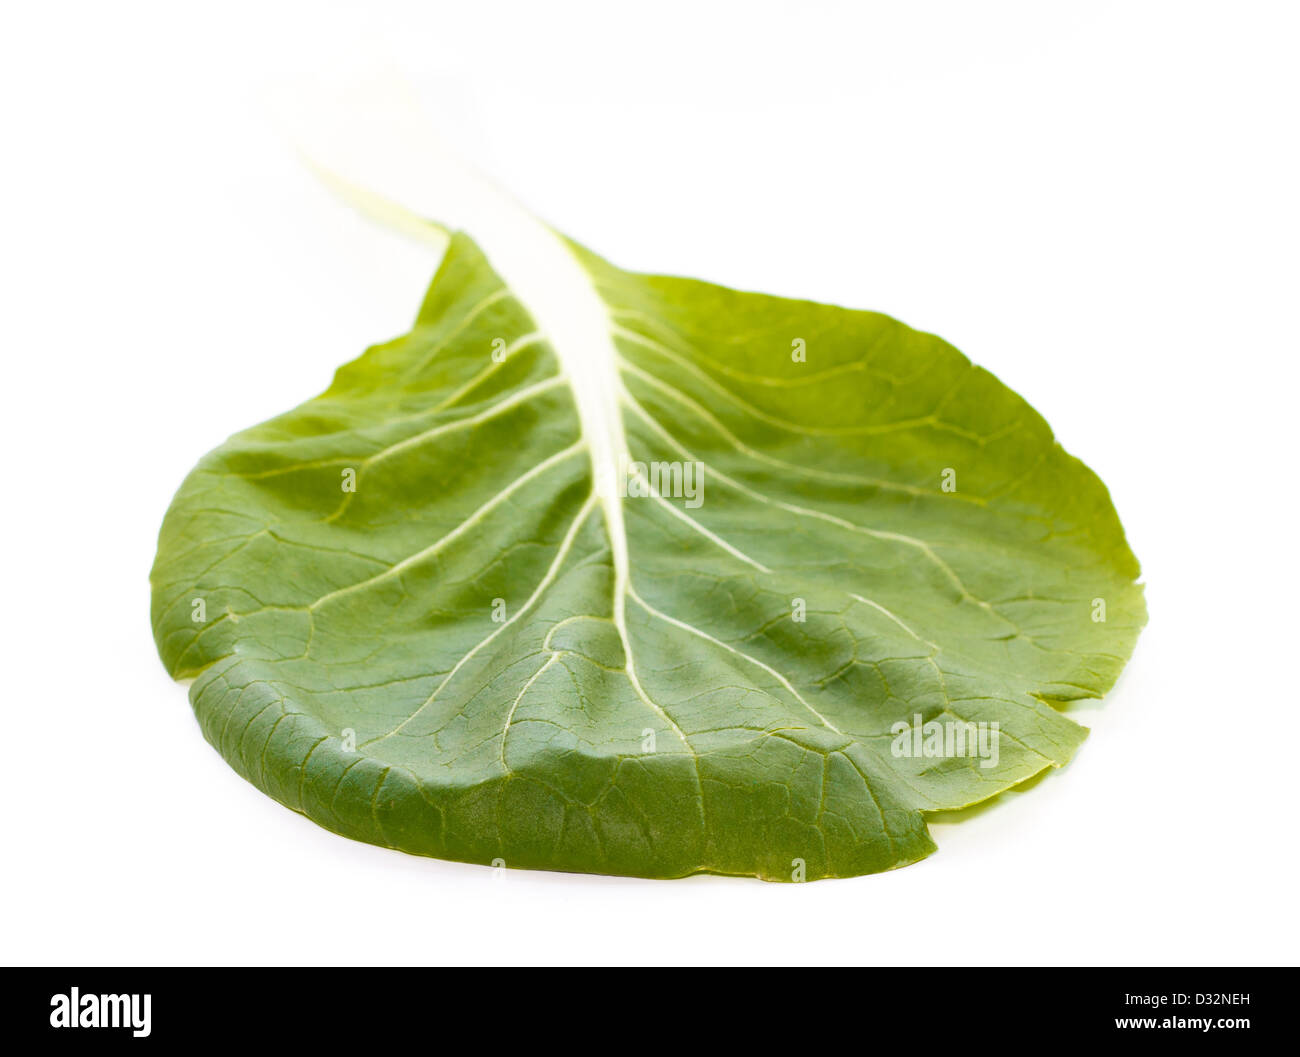 Green pak choi (Brassica rapa) foglie con nervature contro uno sfondo bianco Foto Stock